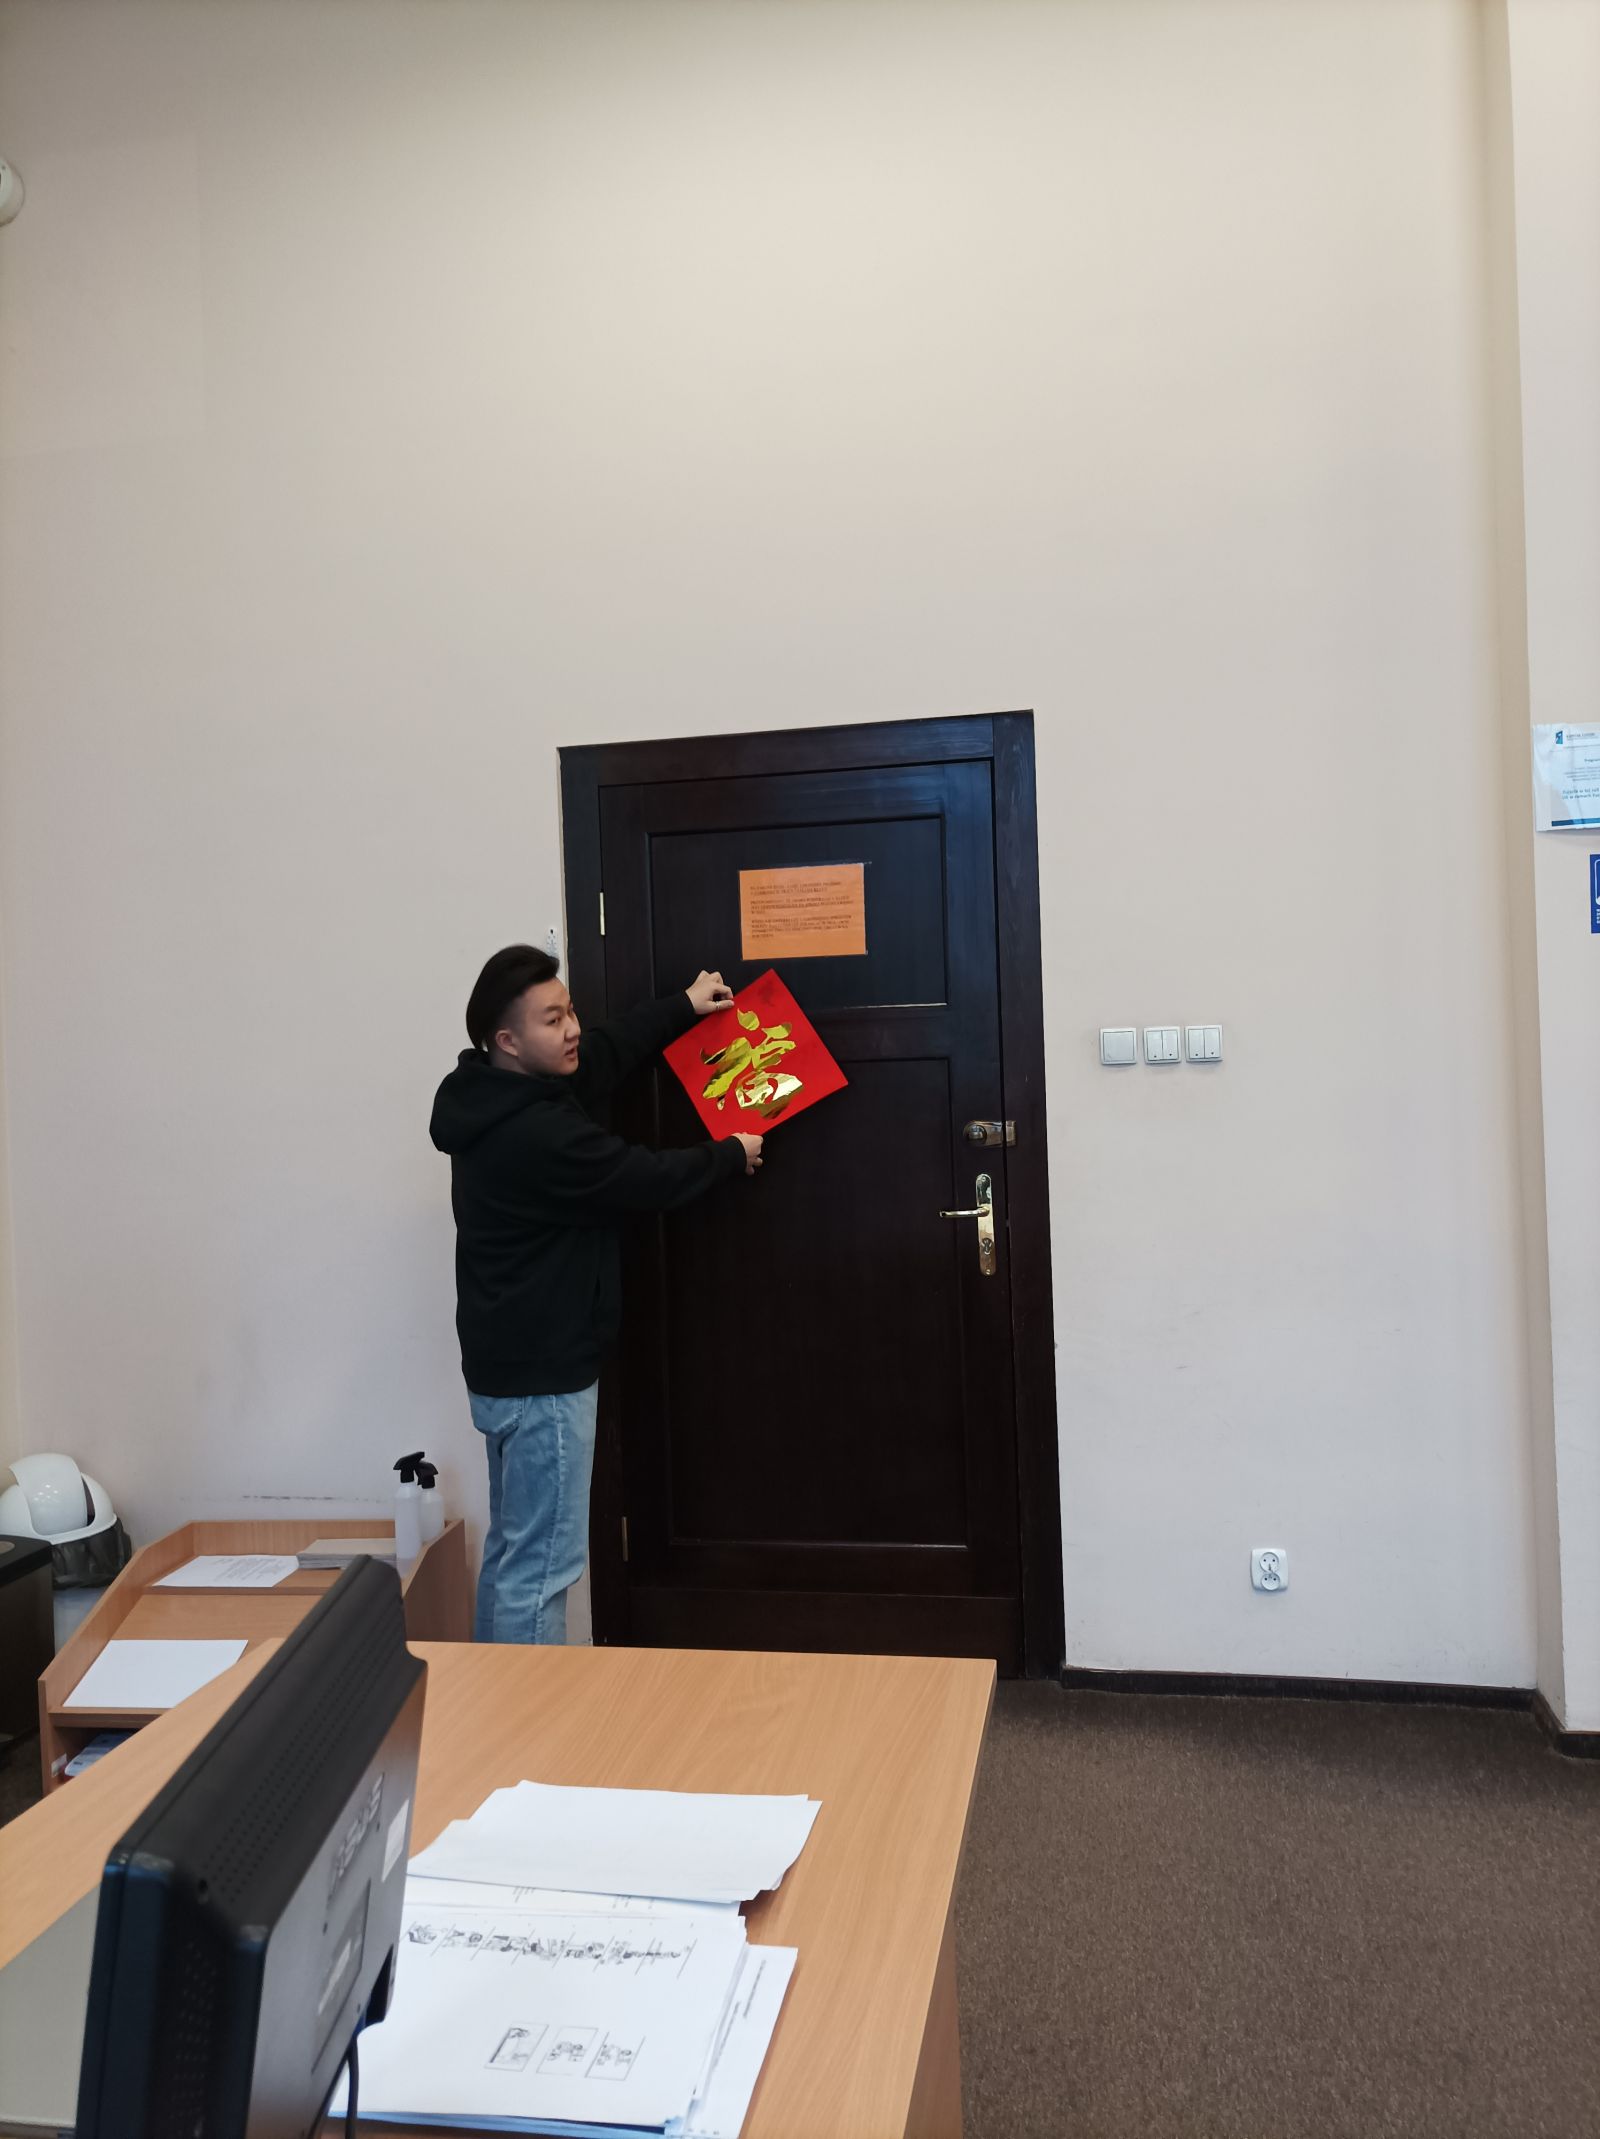 Student z Chin przywiesza czerwoną kopertę na drzwiach.